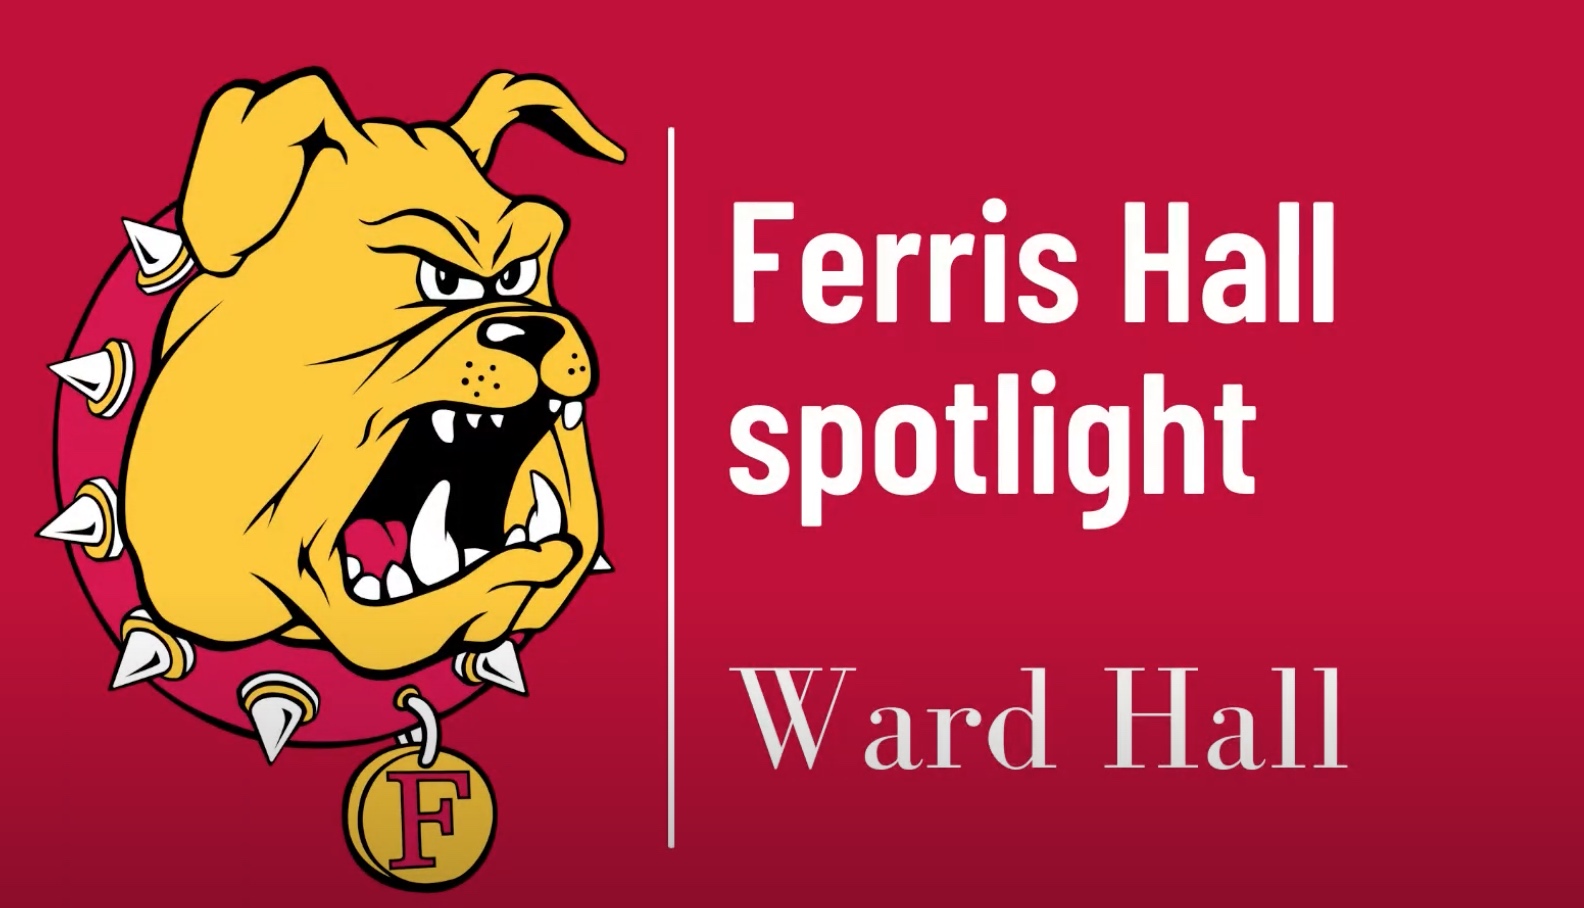 Ward hall spotlight